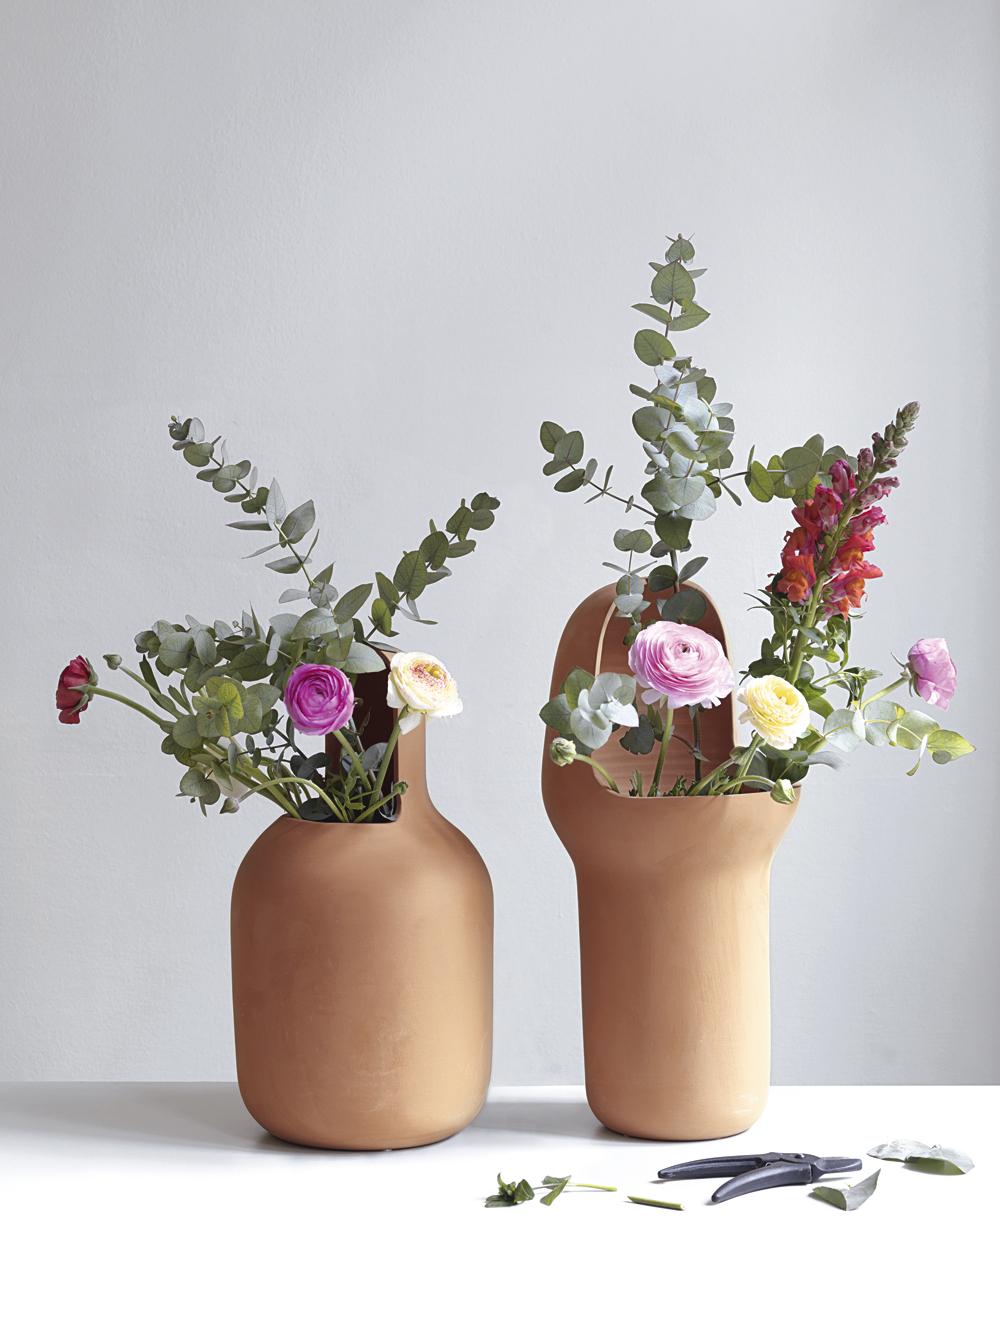 Jaime Hayon a conçu les vases Gardenia en terre cuite pour compléter sa collection de mobilier d'extérieur. 

Les trois vases ont une forme unique, illustrant le design caractéristique de Hyaon. Fabriqués à la main en terre cuite traitée pour